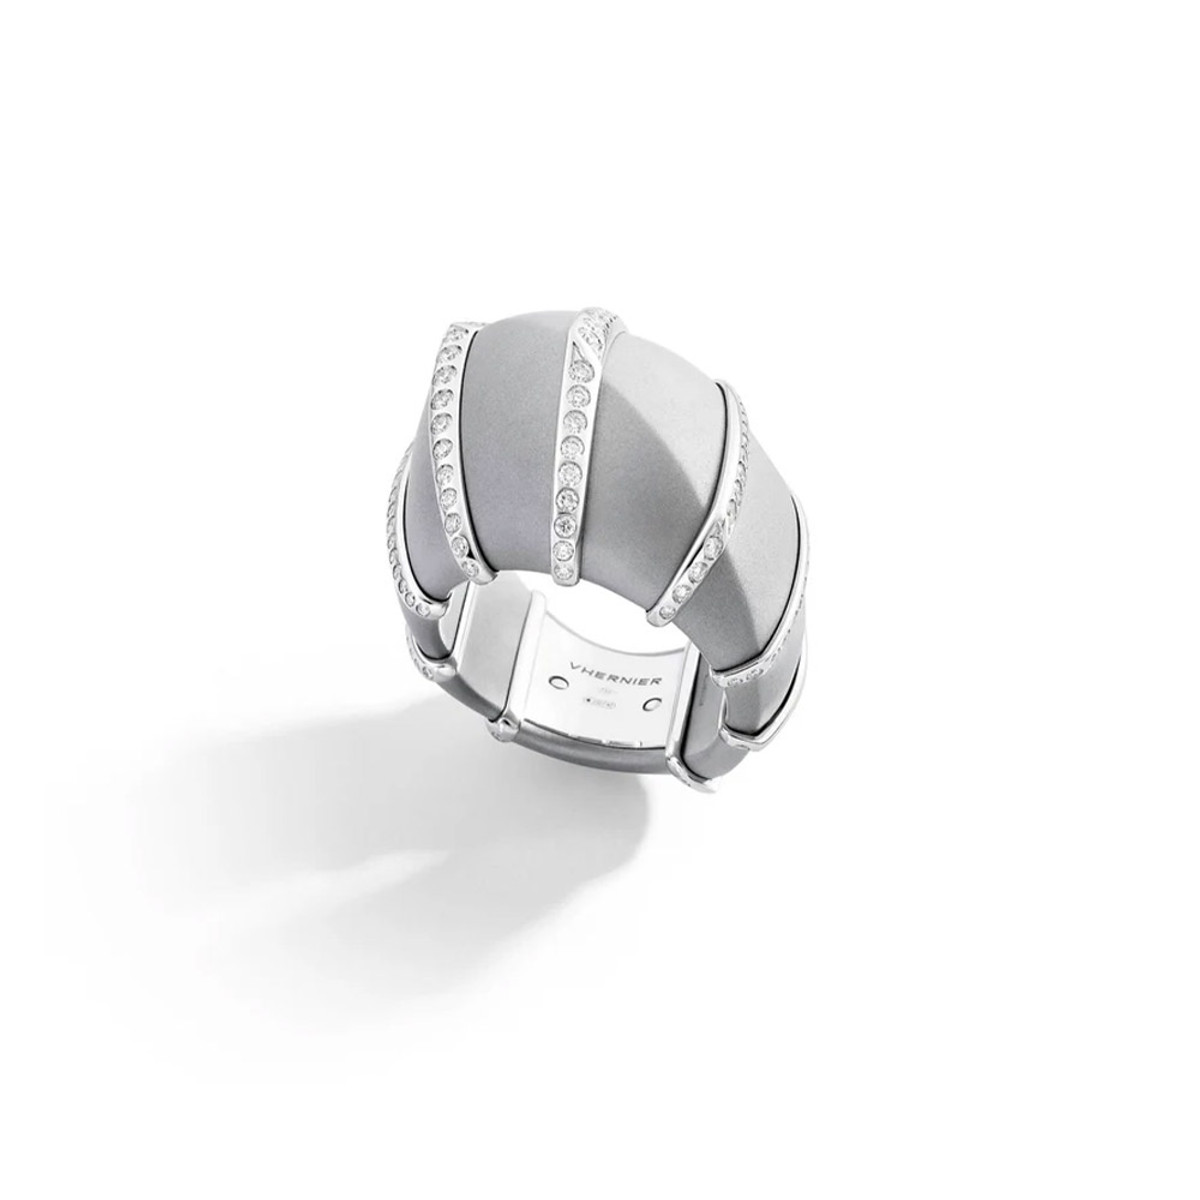 Vhernier 18K White Gold and Aluminum Ardis Diamond Ring-67596